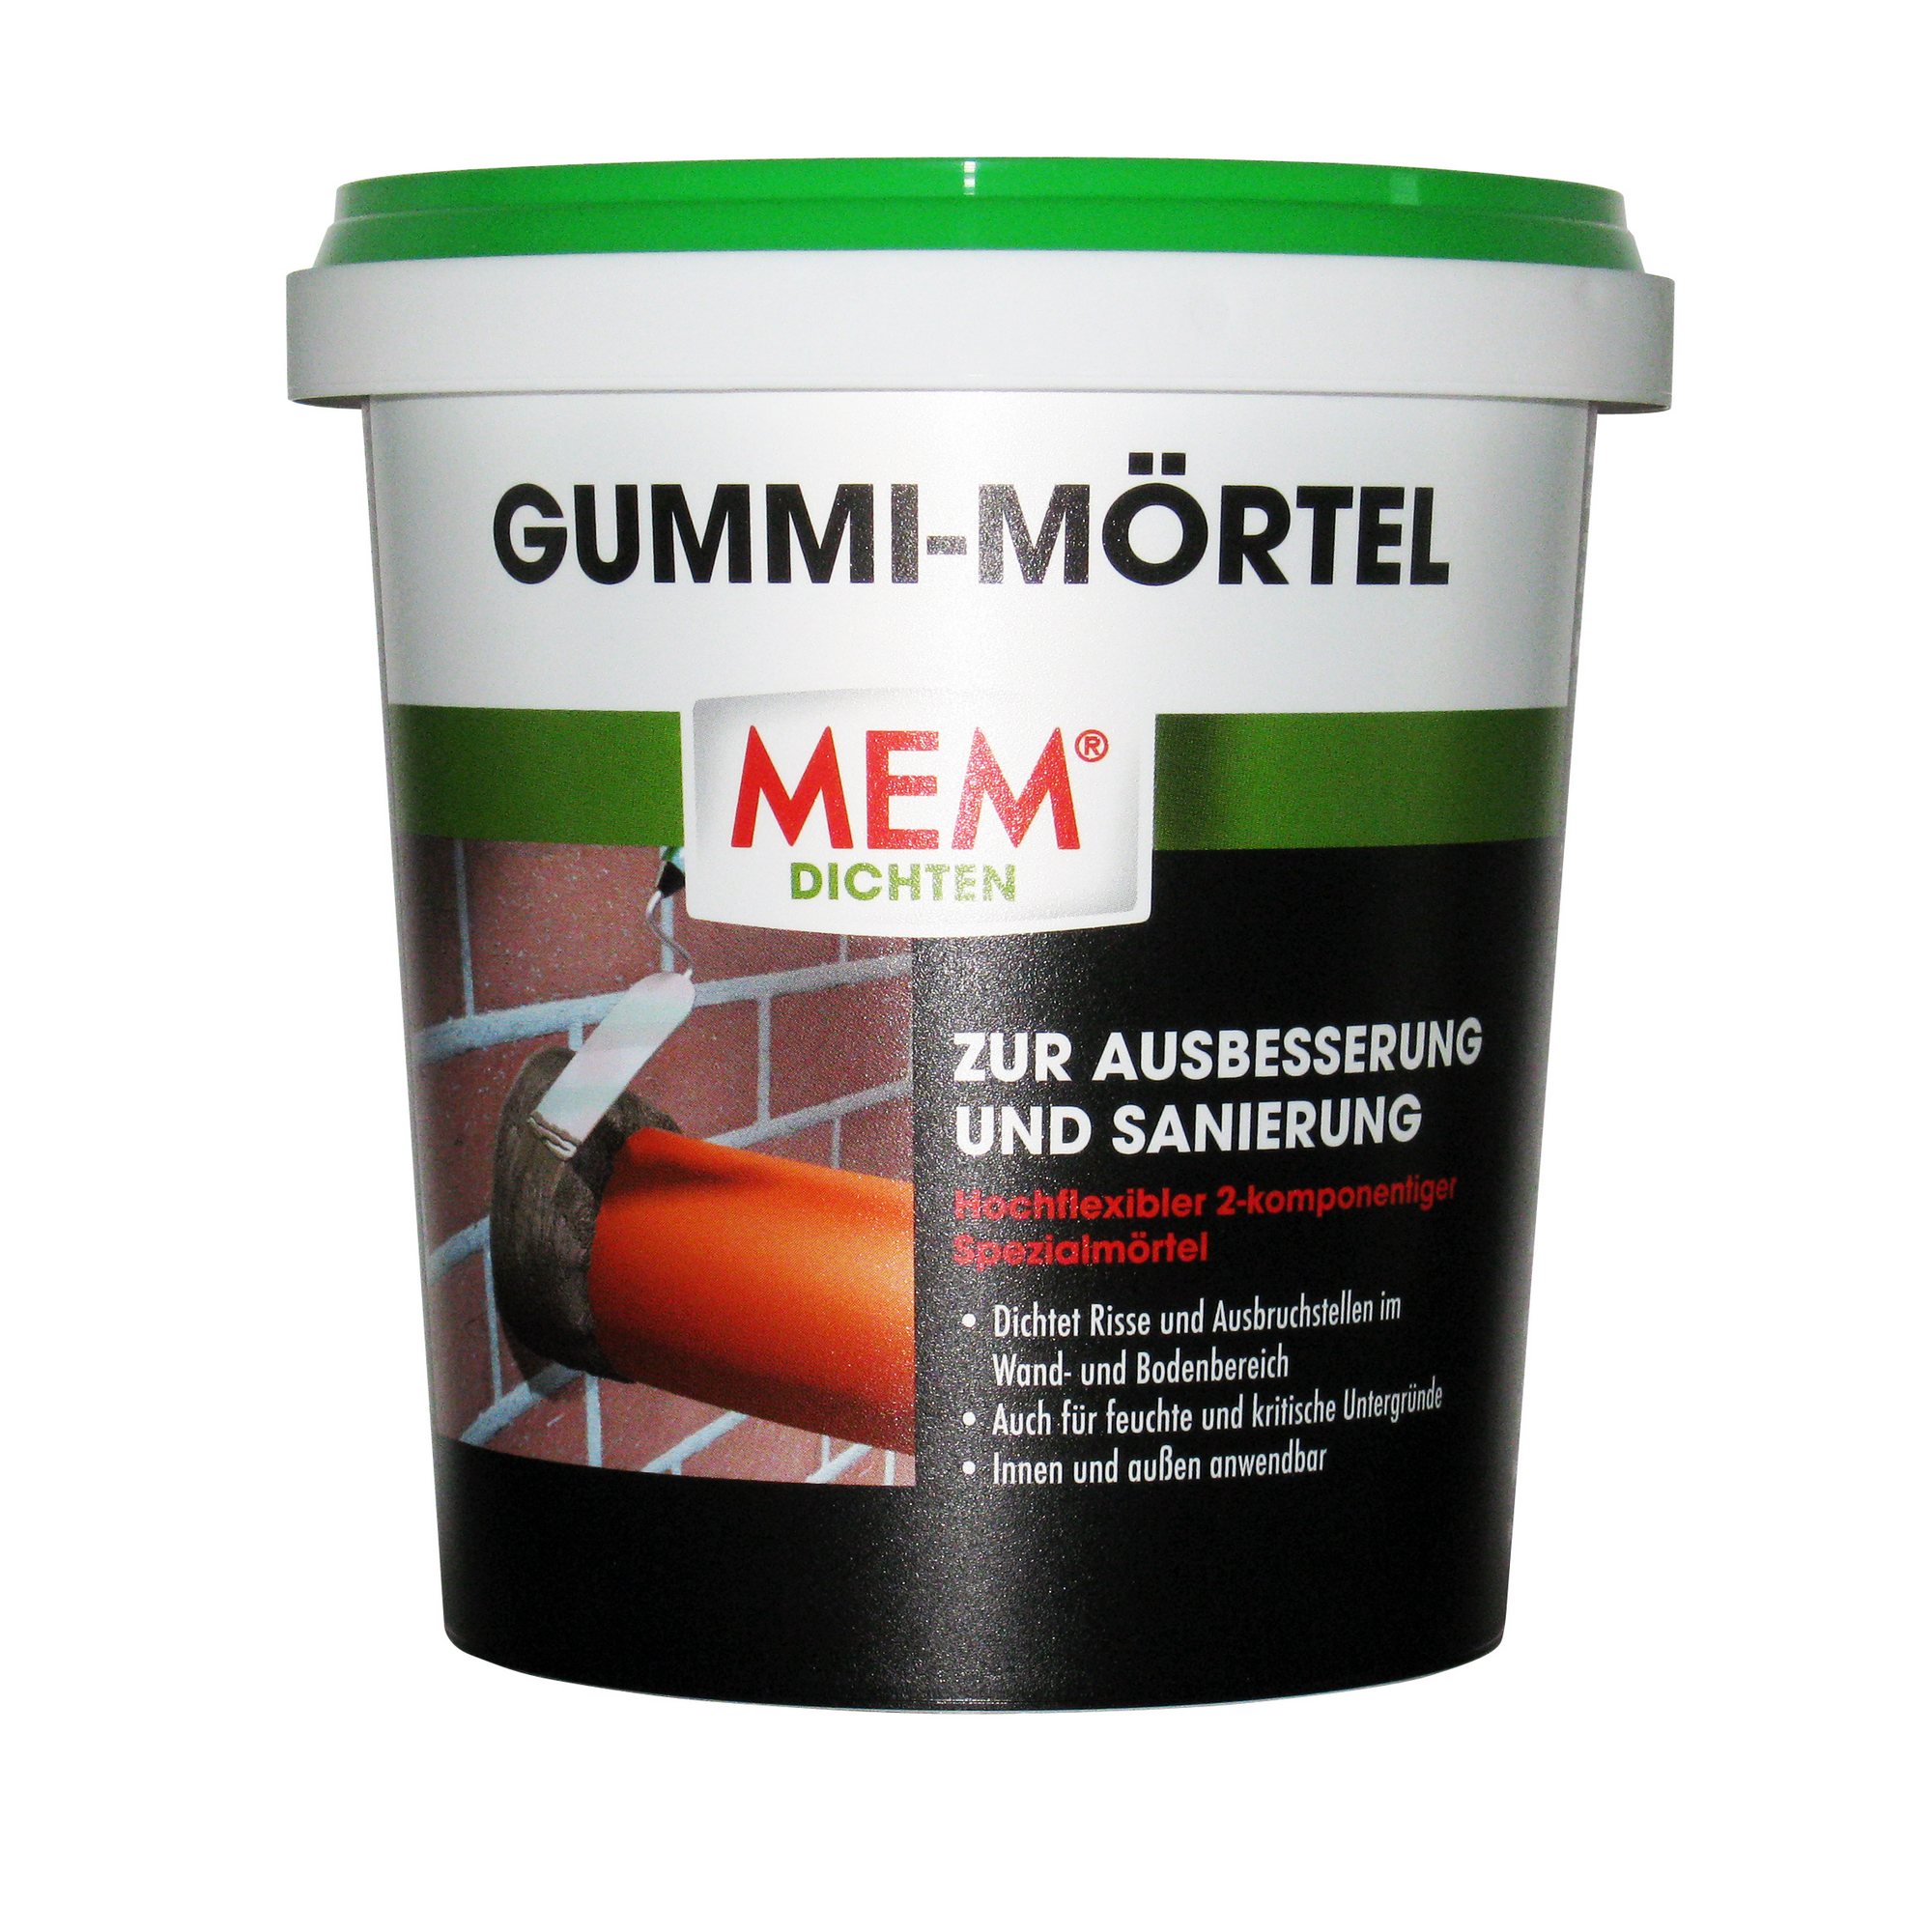 MEM Gummi Mörtel 1 Kg 500340 // Spezialmörtel // 2 Komponentig // Hochflexibel 